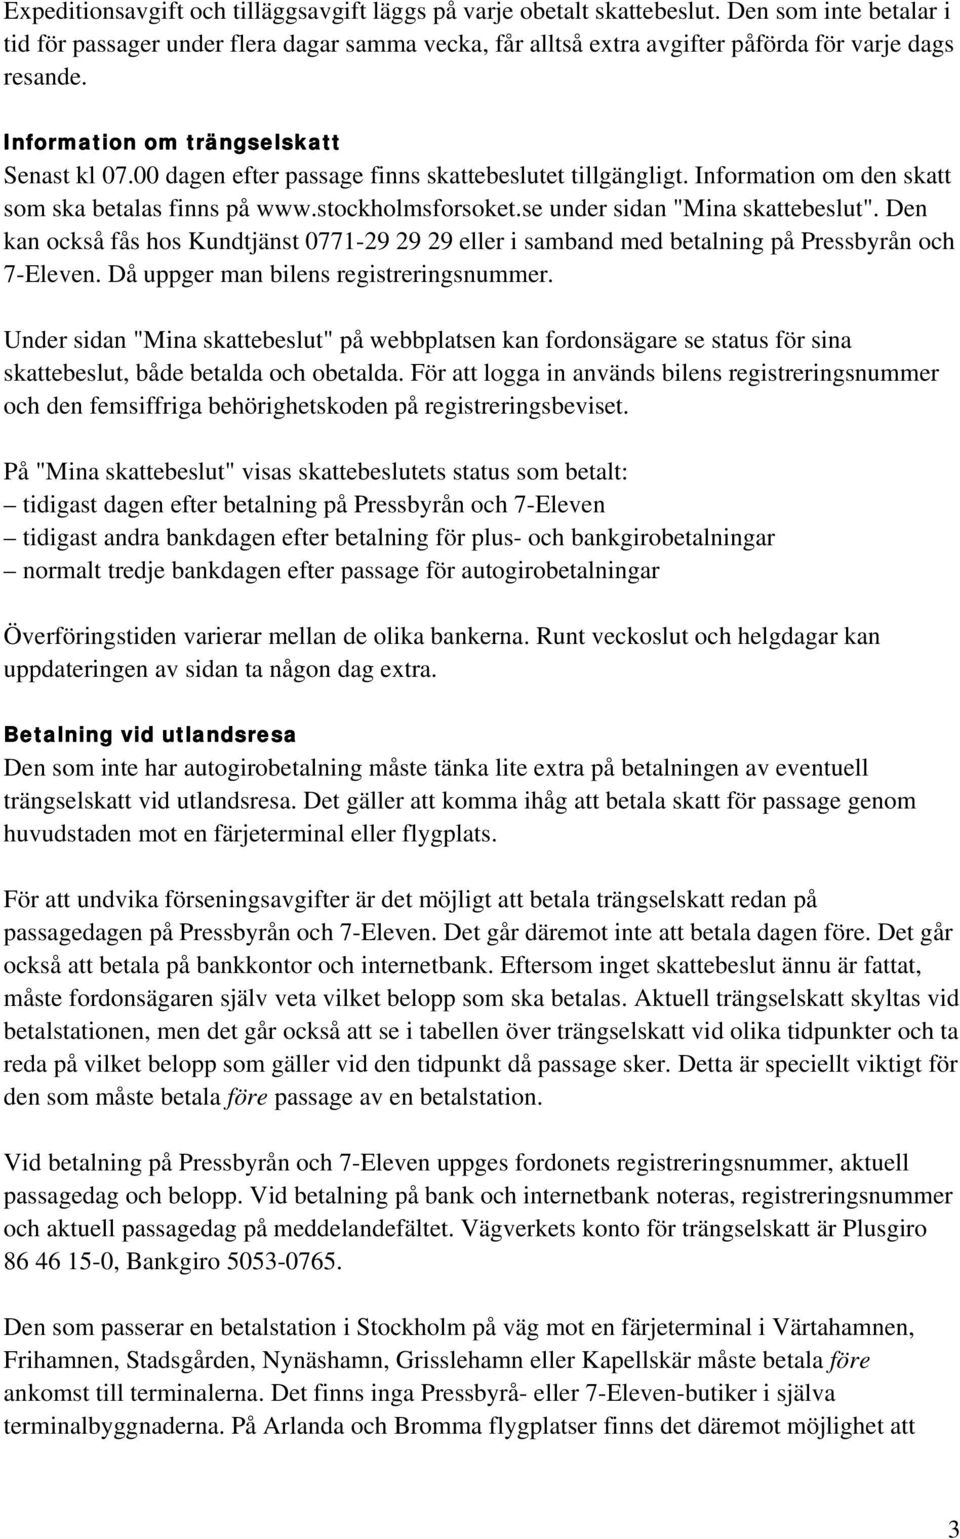 00 dagen efter passage finns skattebeslutet tillgängligt. Information om den skatt som ska betalas finns på www.stockholmsforsoket.se under sidan "Mina skattebeslut".